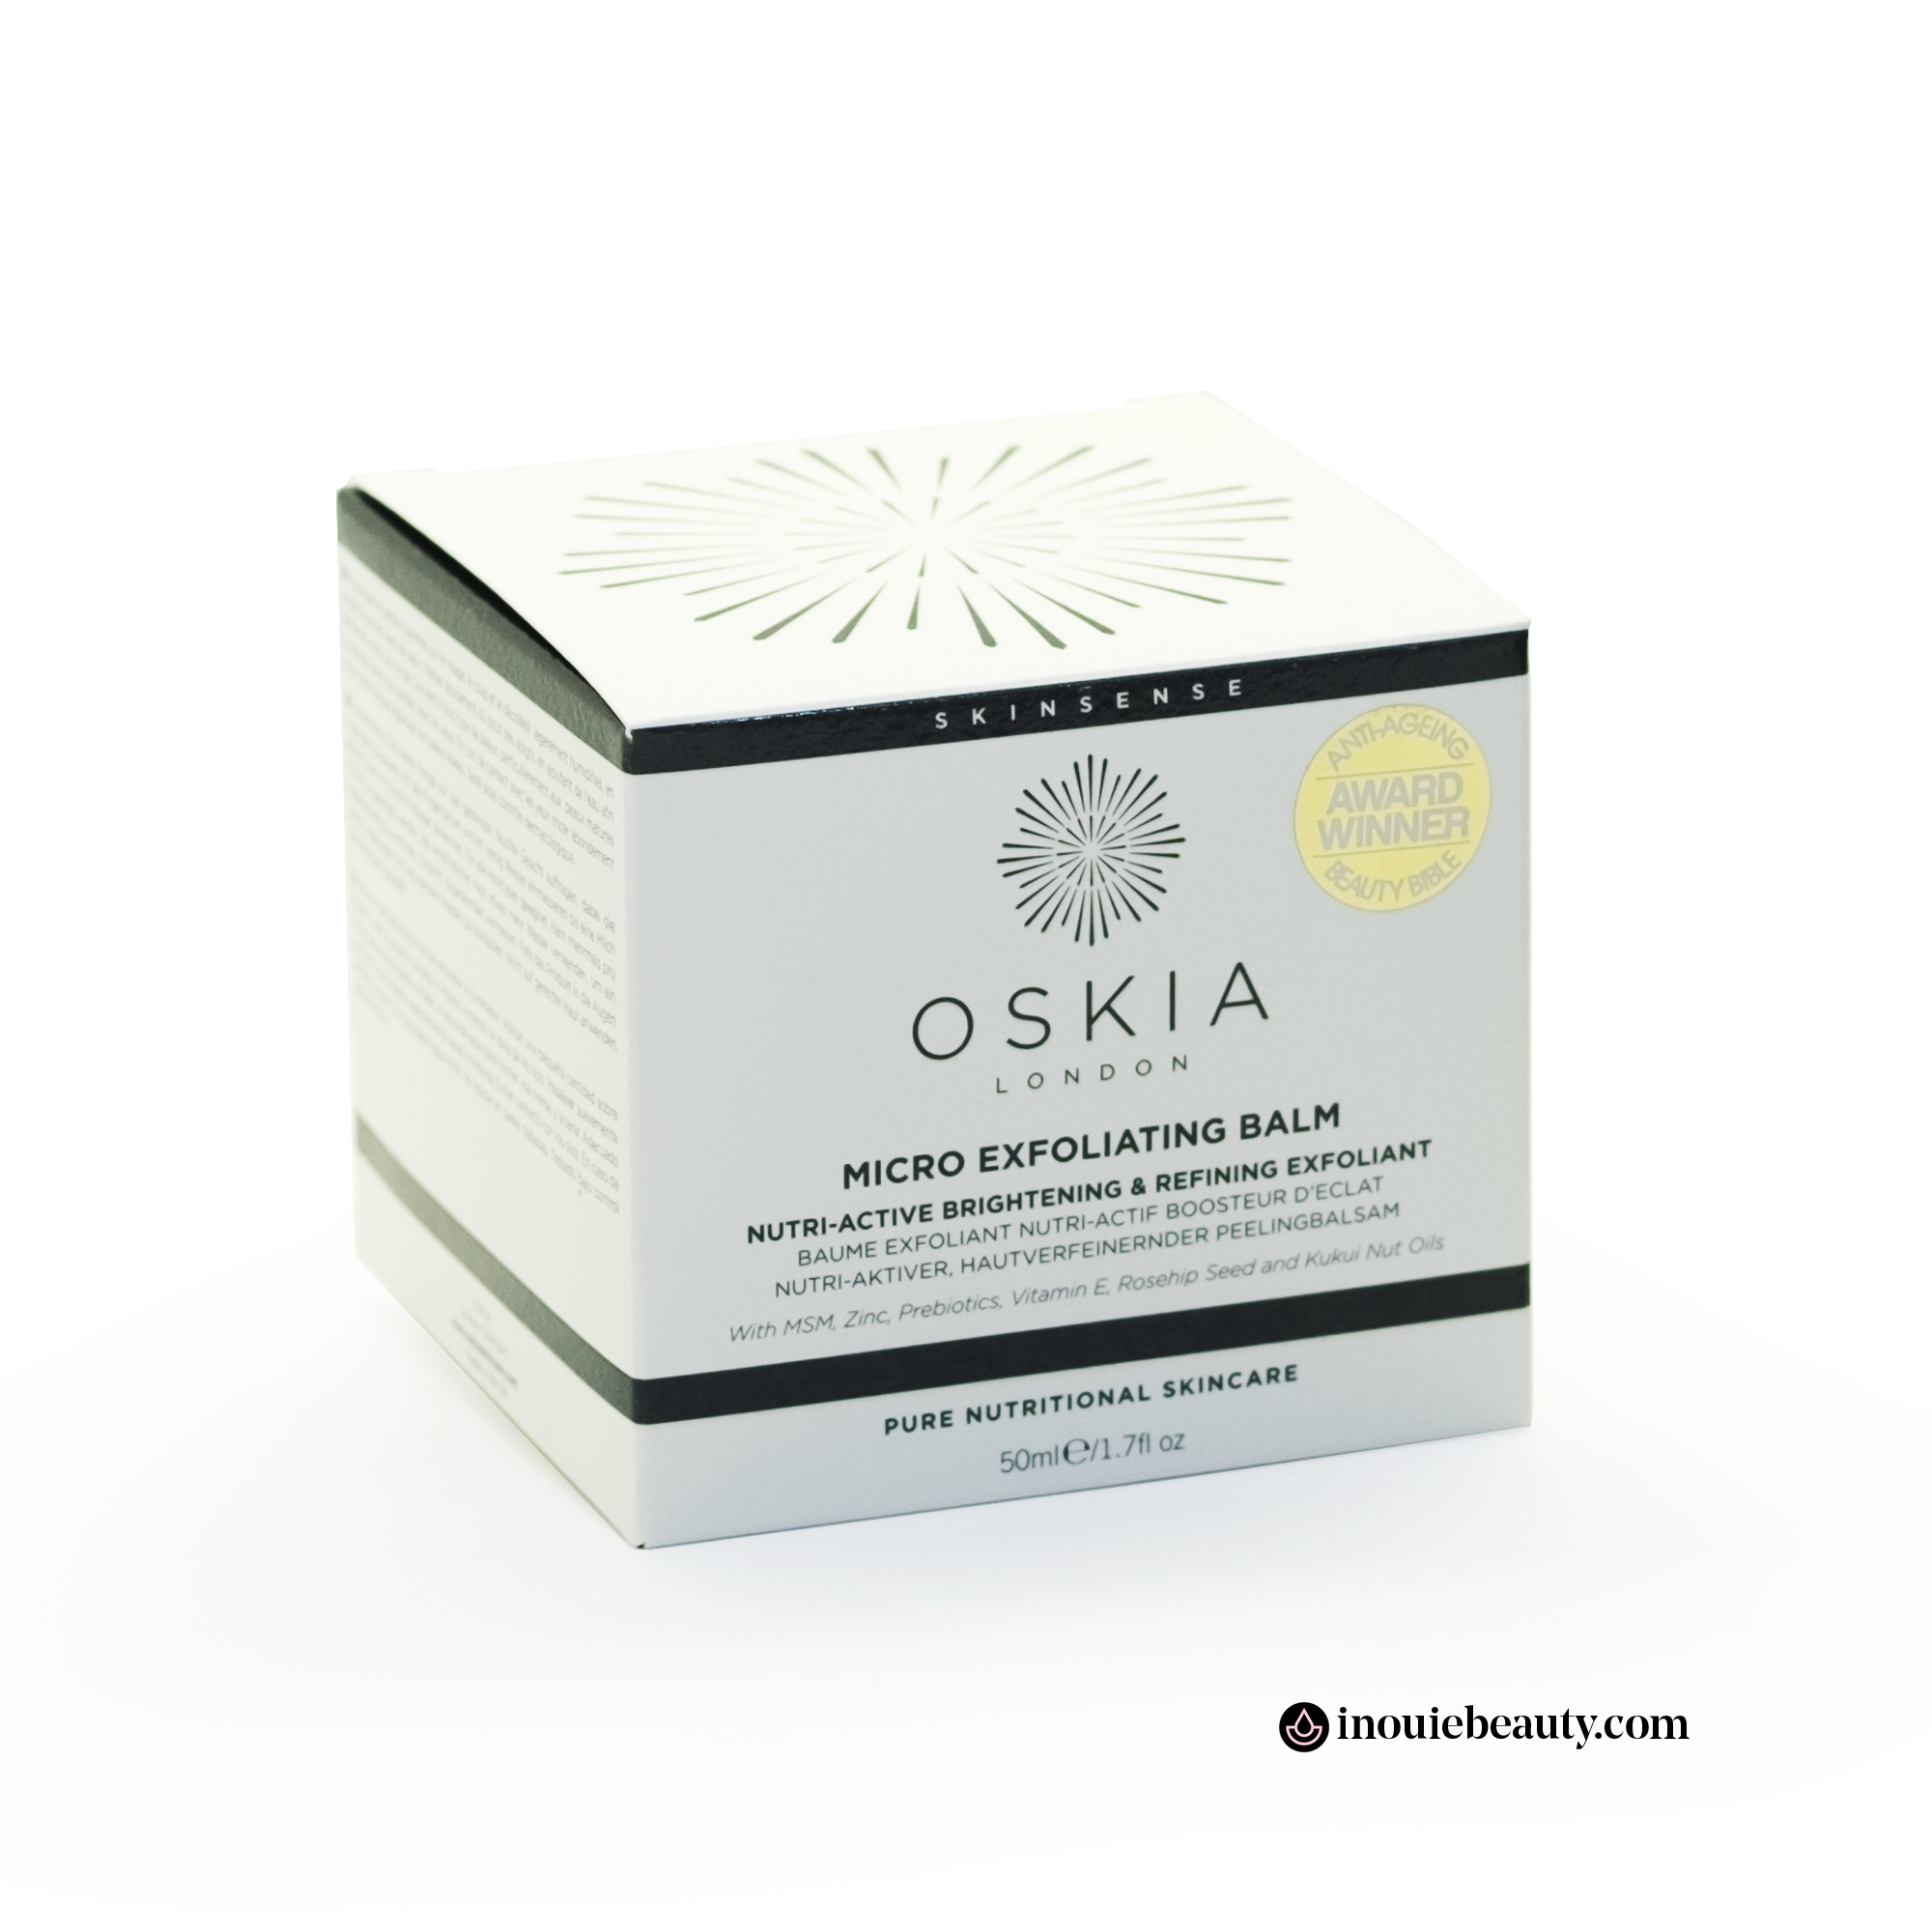 Oskia Micro Exfoliating Balm